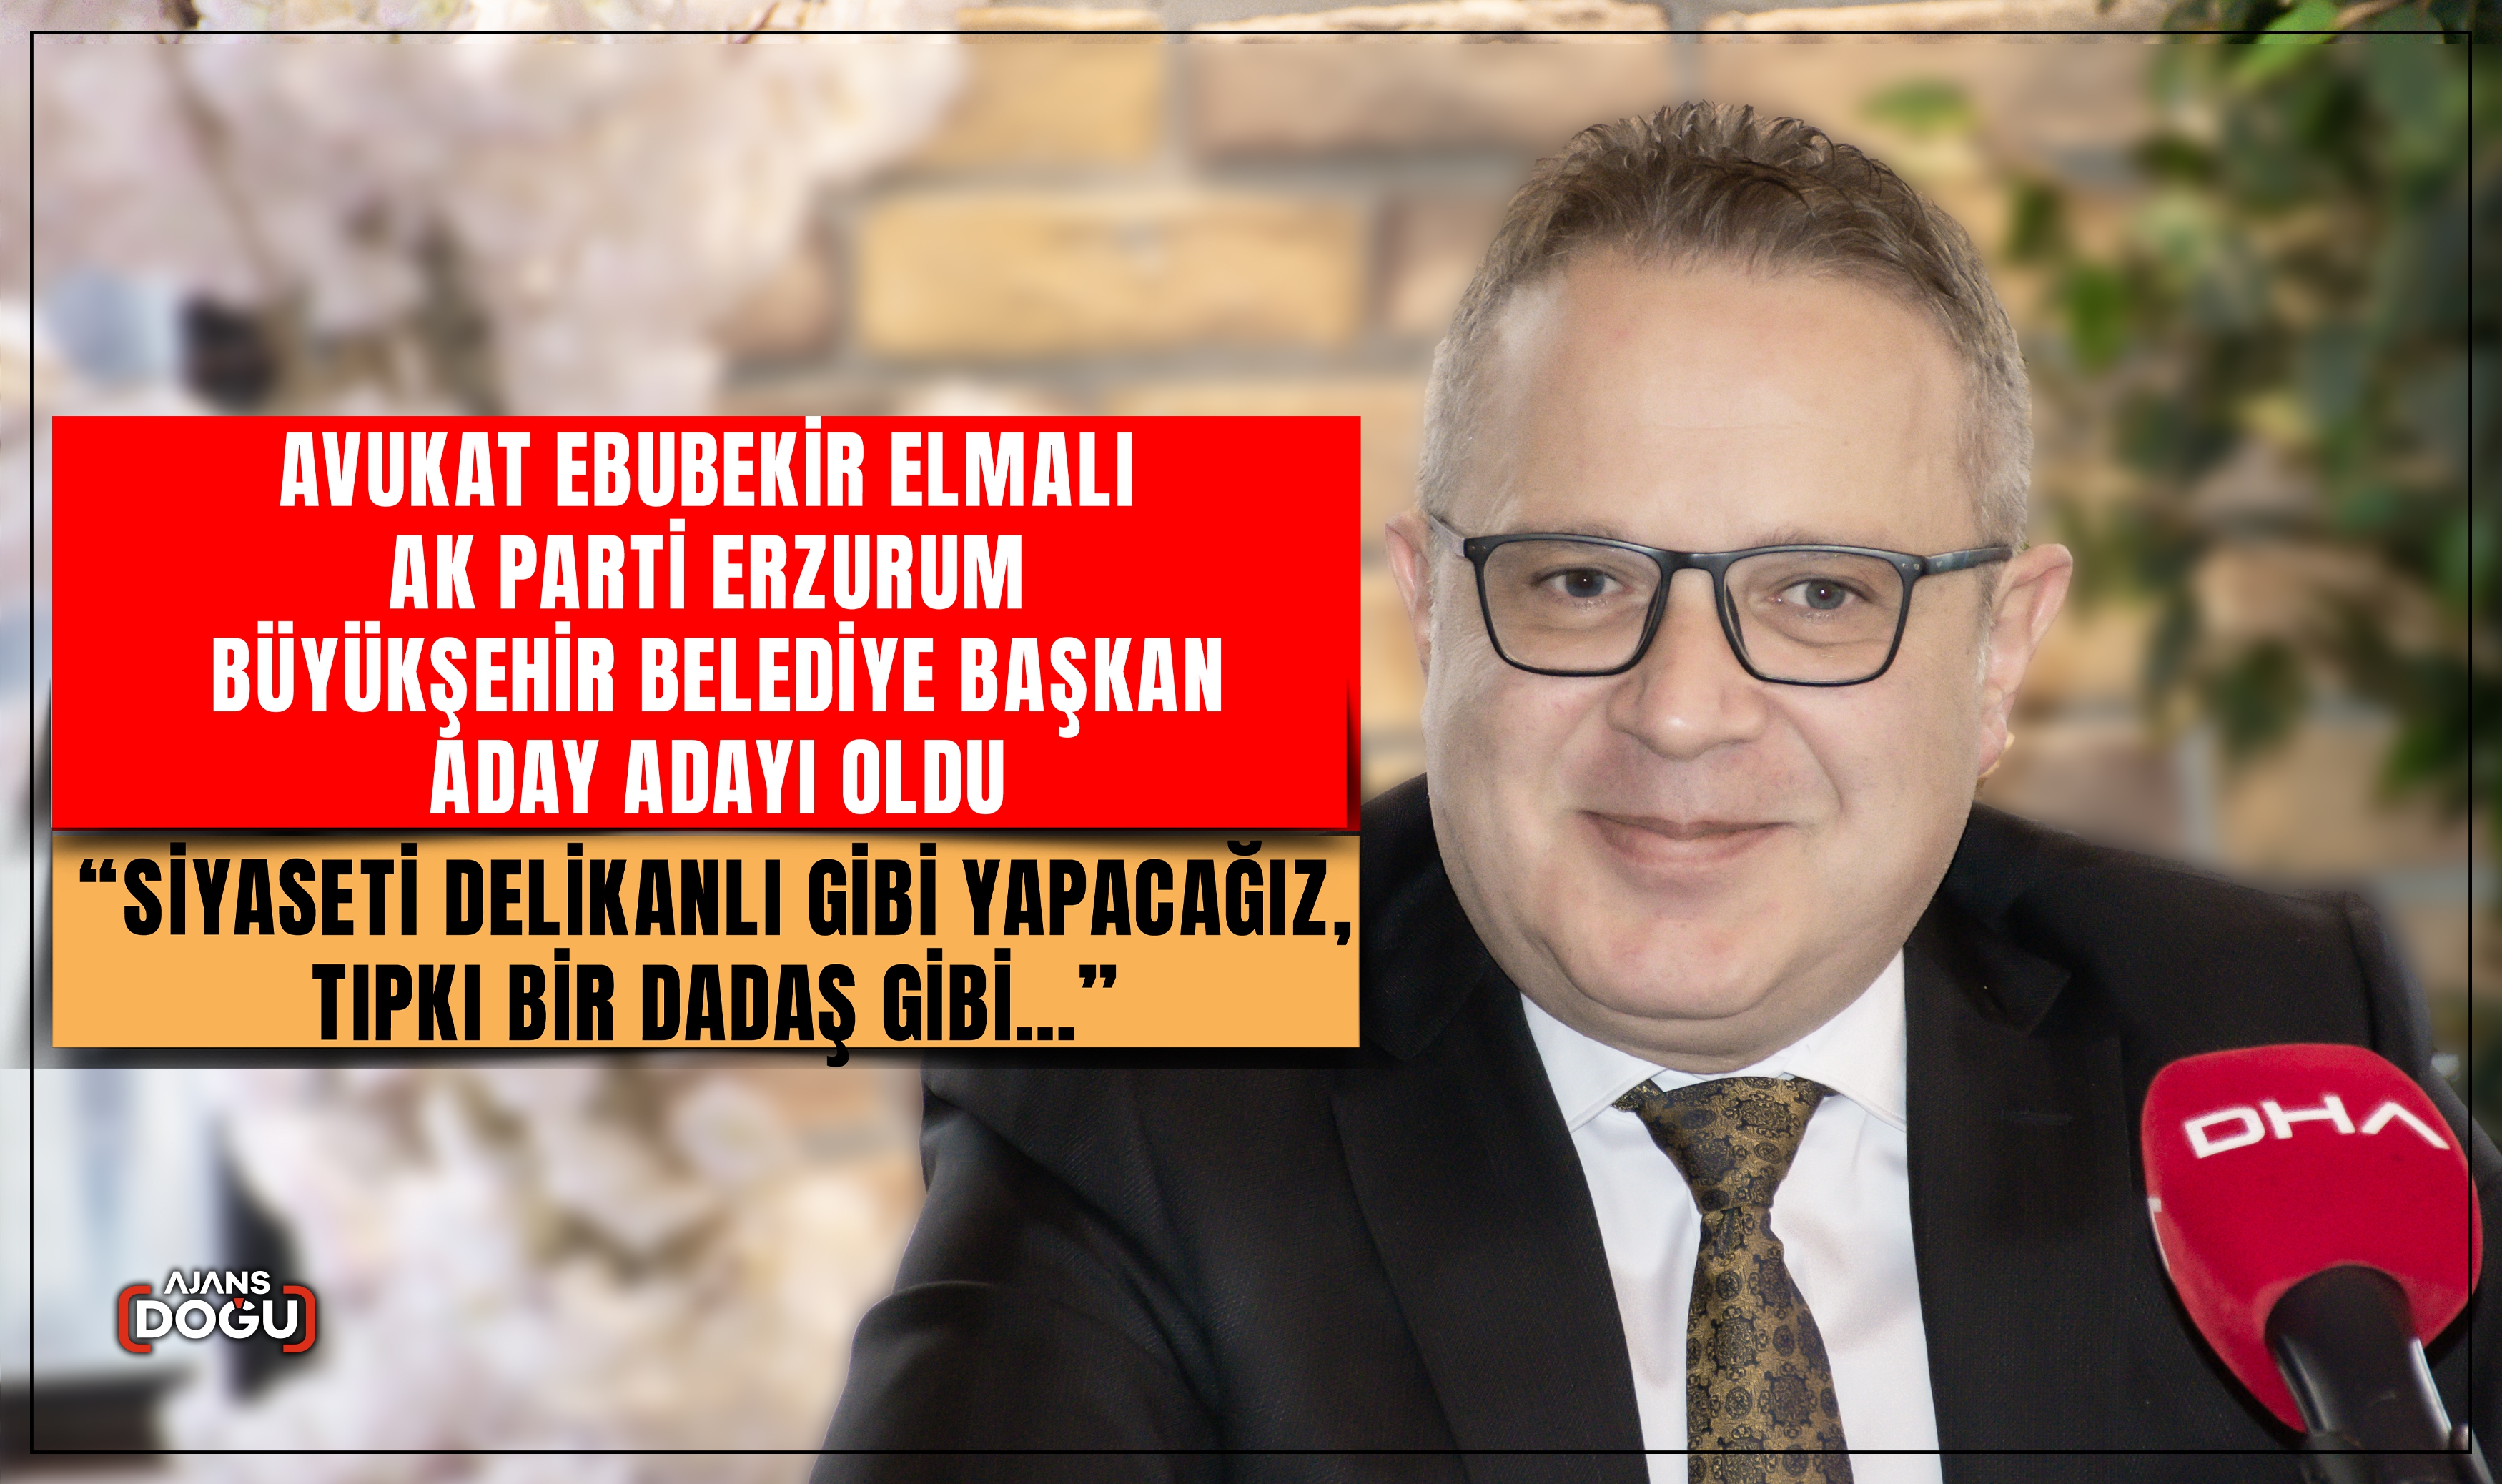 Avukat Ebubekir Elmalı AK Parti Erzurum Büyükşehir Belediye Başkan aday adayı oldu